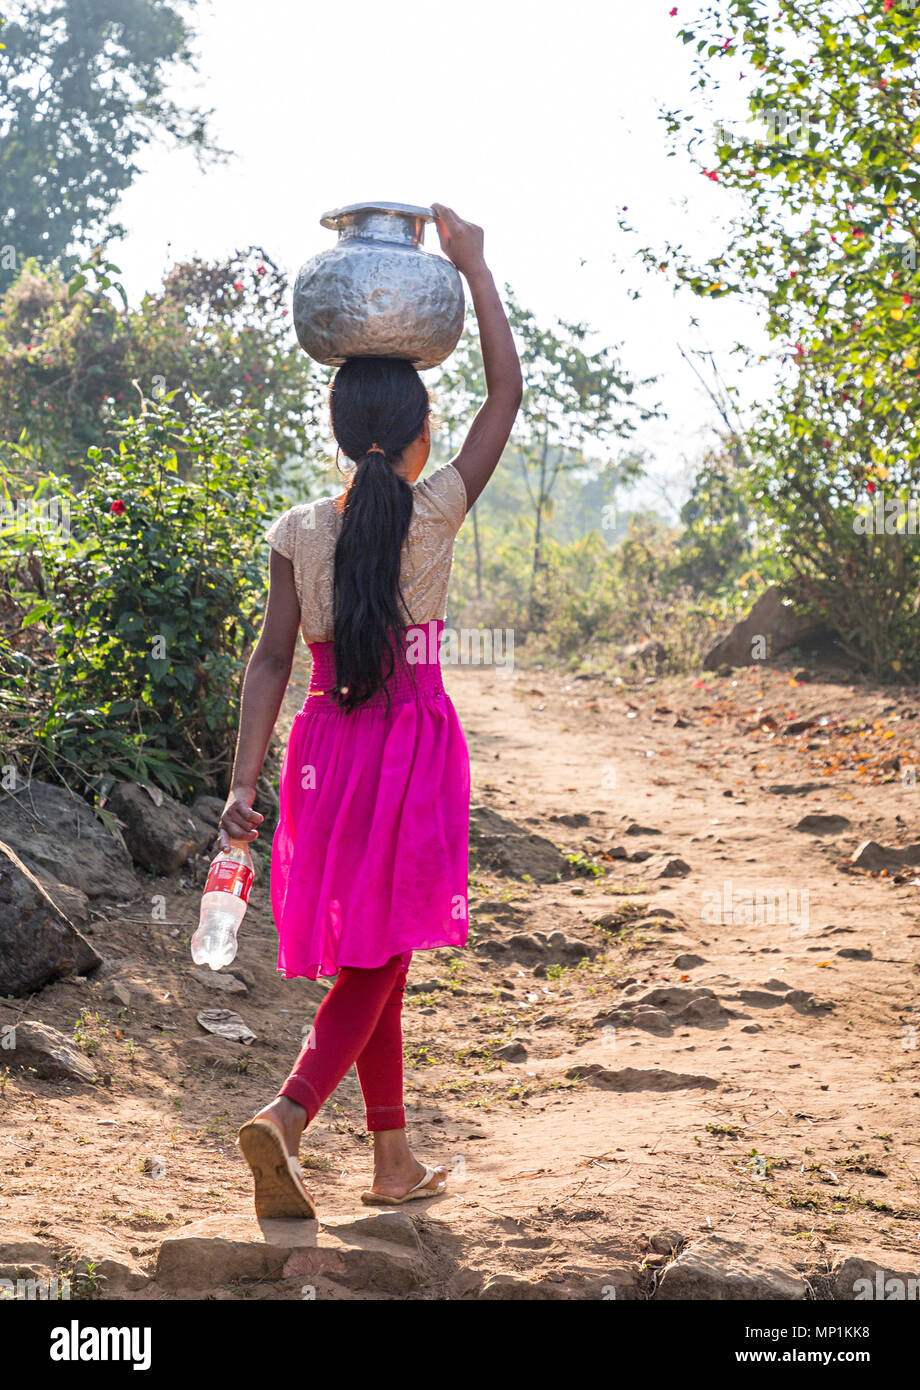 Junge Mädchen tragen von Wasser in einem Topf auf dem Kopf, саква Dorf, Meghalaya, Indien Stockfoto